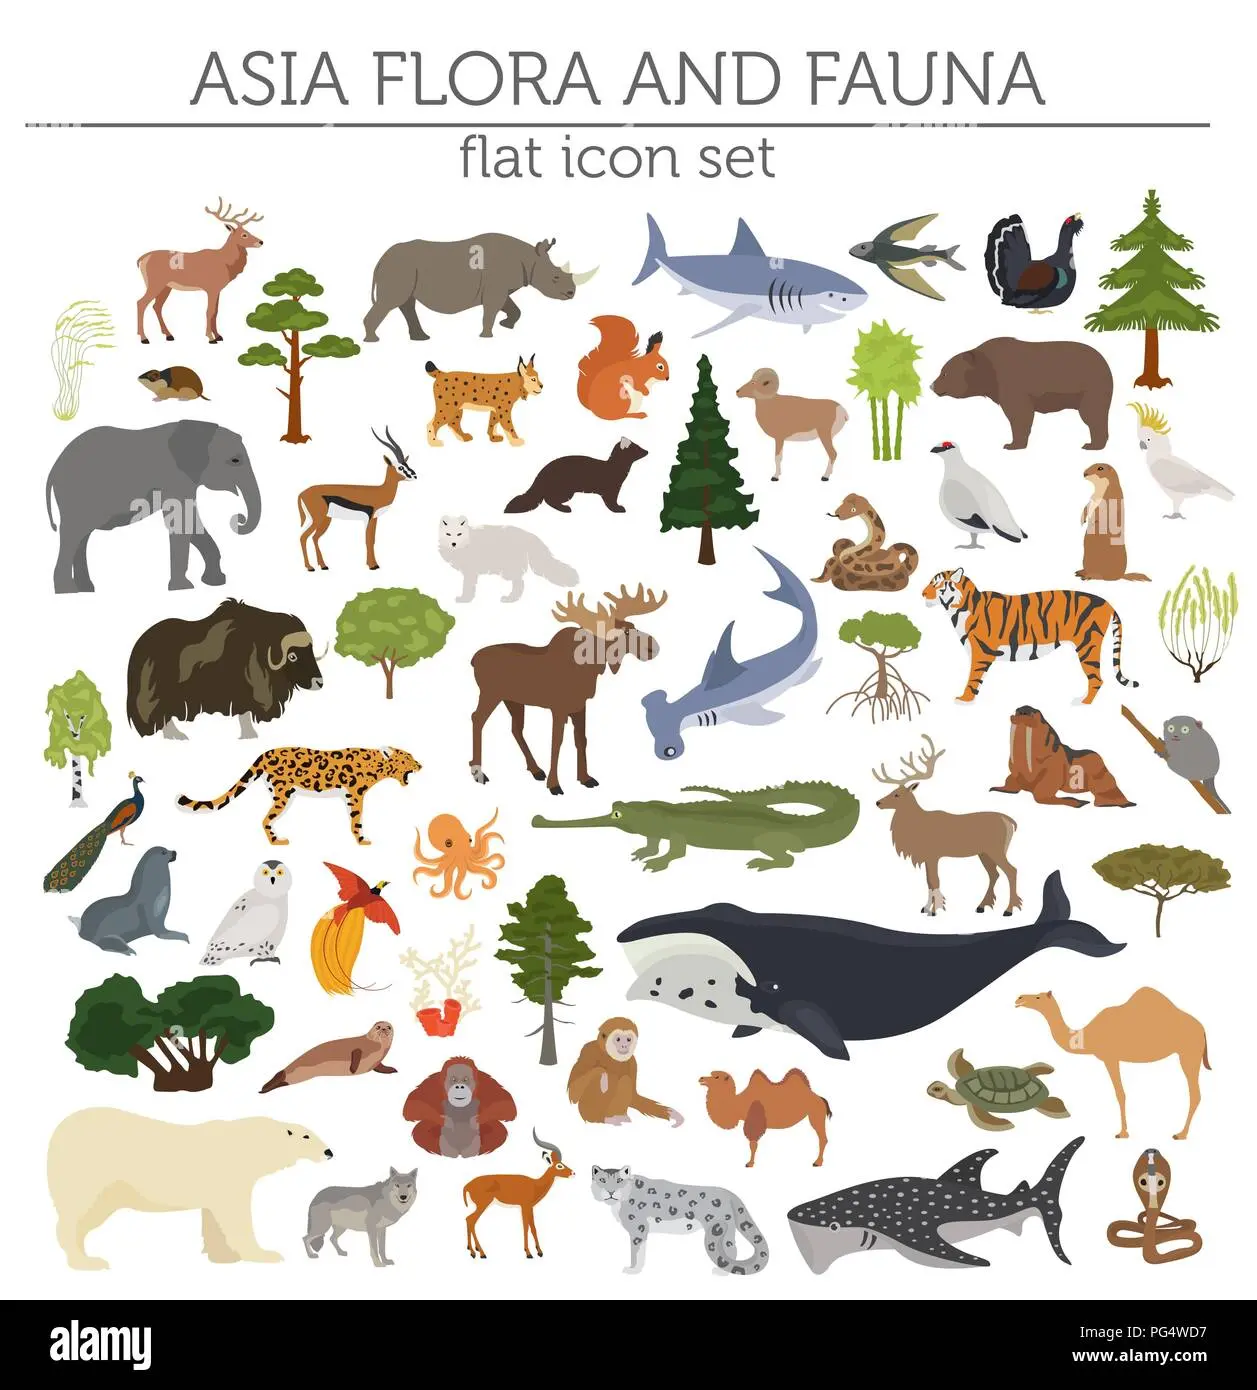 flora y fauna del continente asiático - Cómo es la biodiversidad de Asia